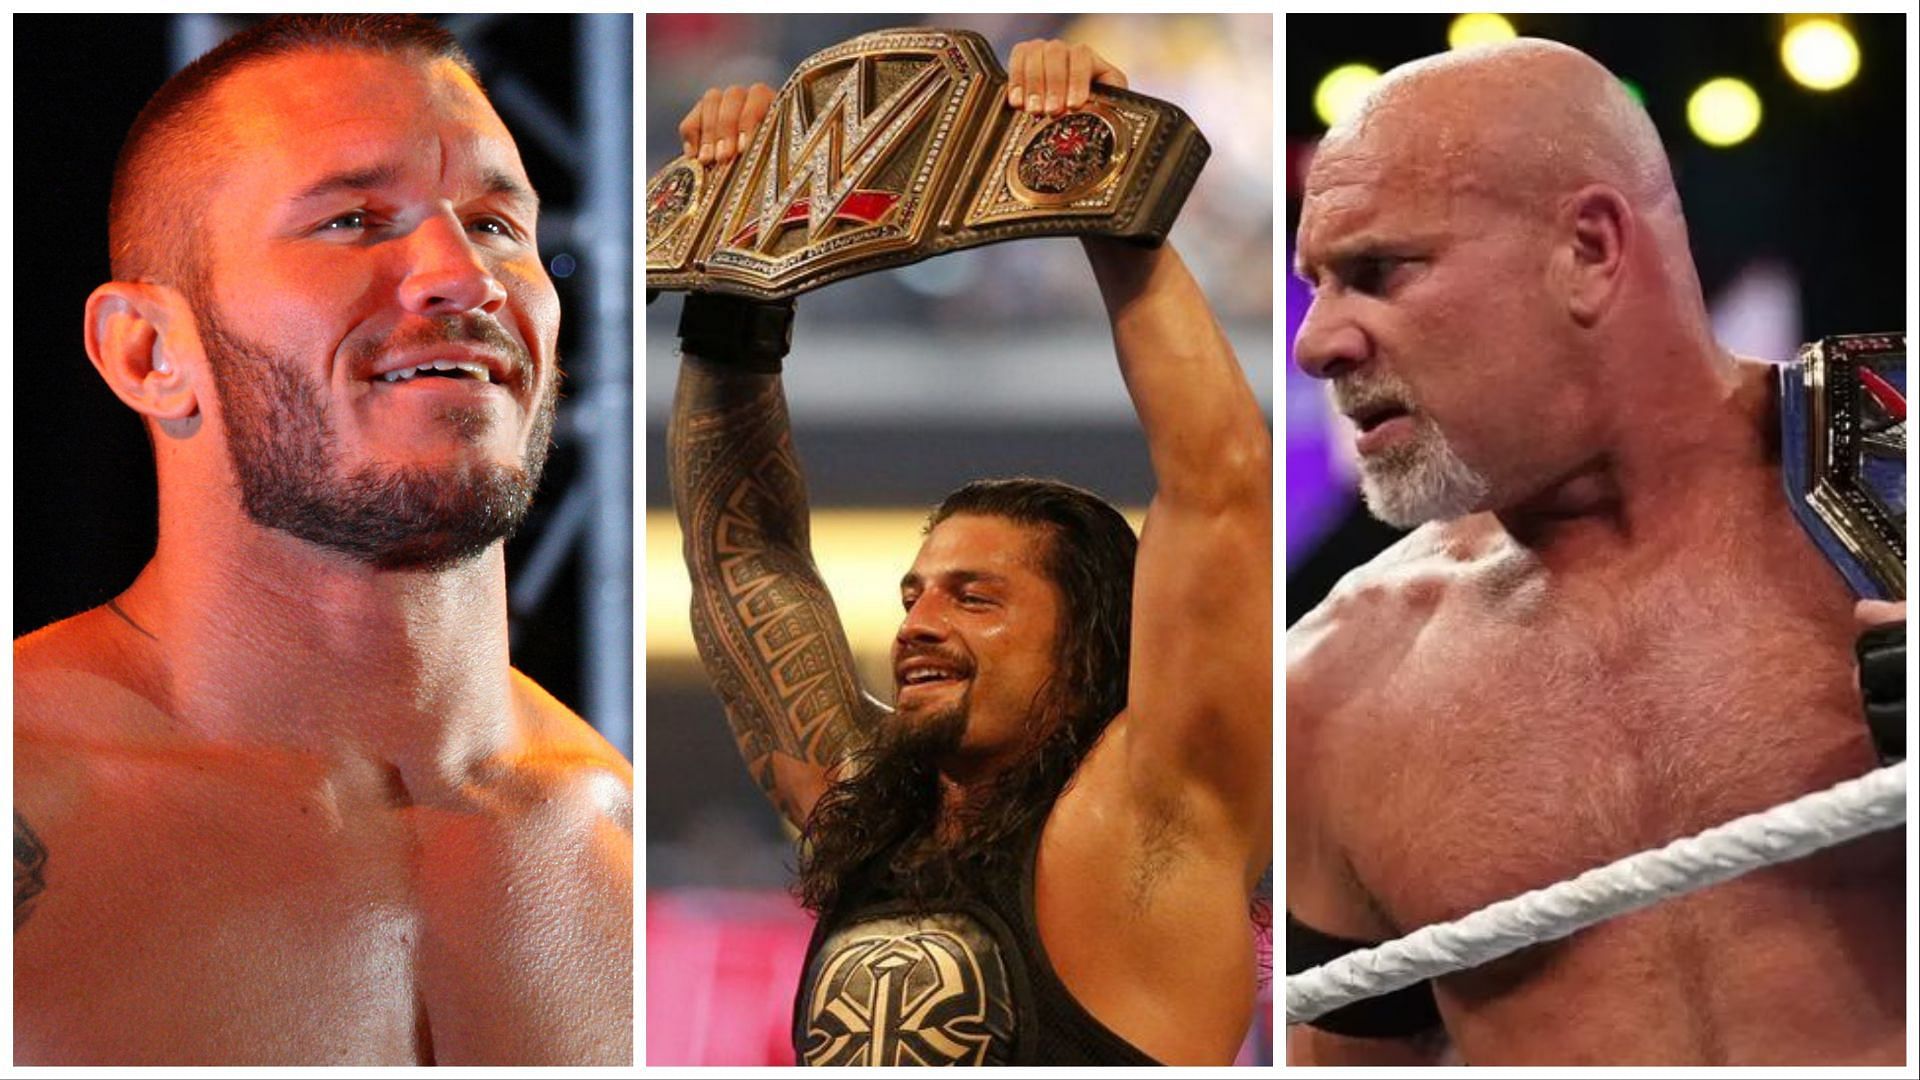 Randy Orton (L), Roman Reigns as WWE Champion (C), Goldberg as Universal Champion (R)